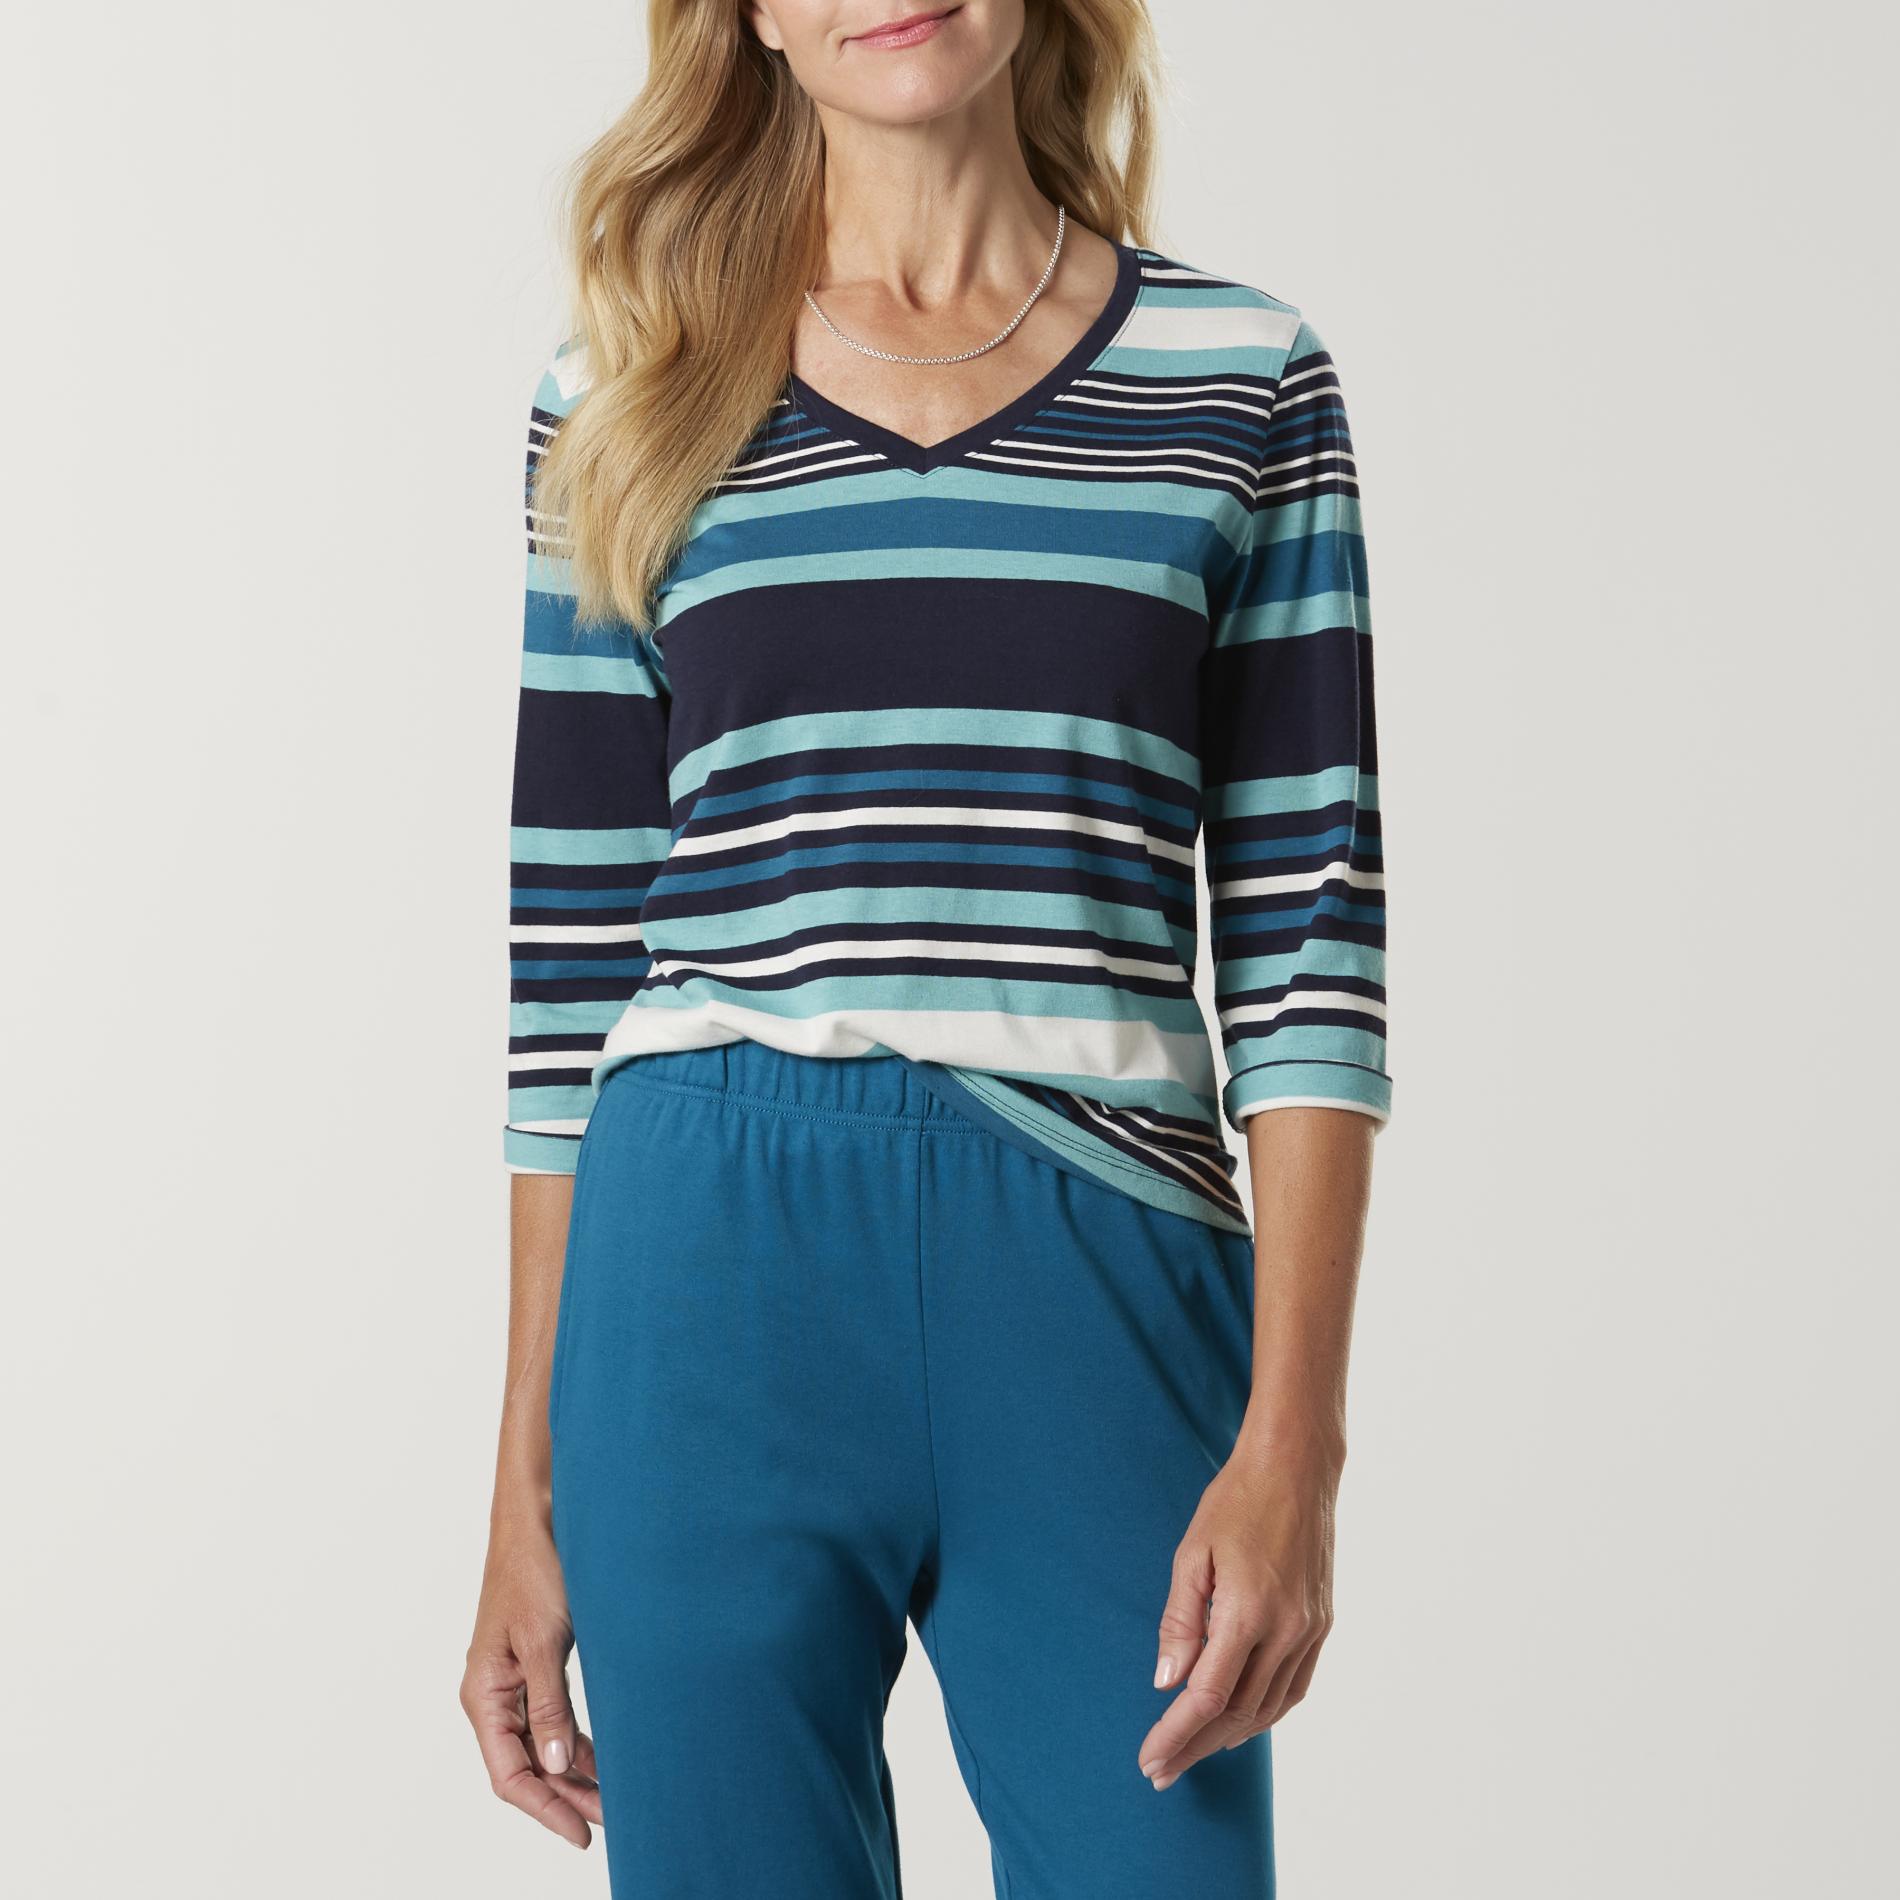 Laura Scott Petites' V-Neck Shirt - Striped